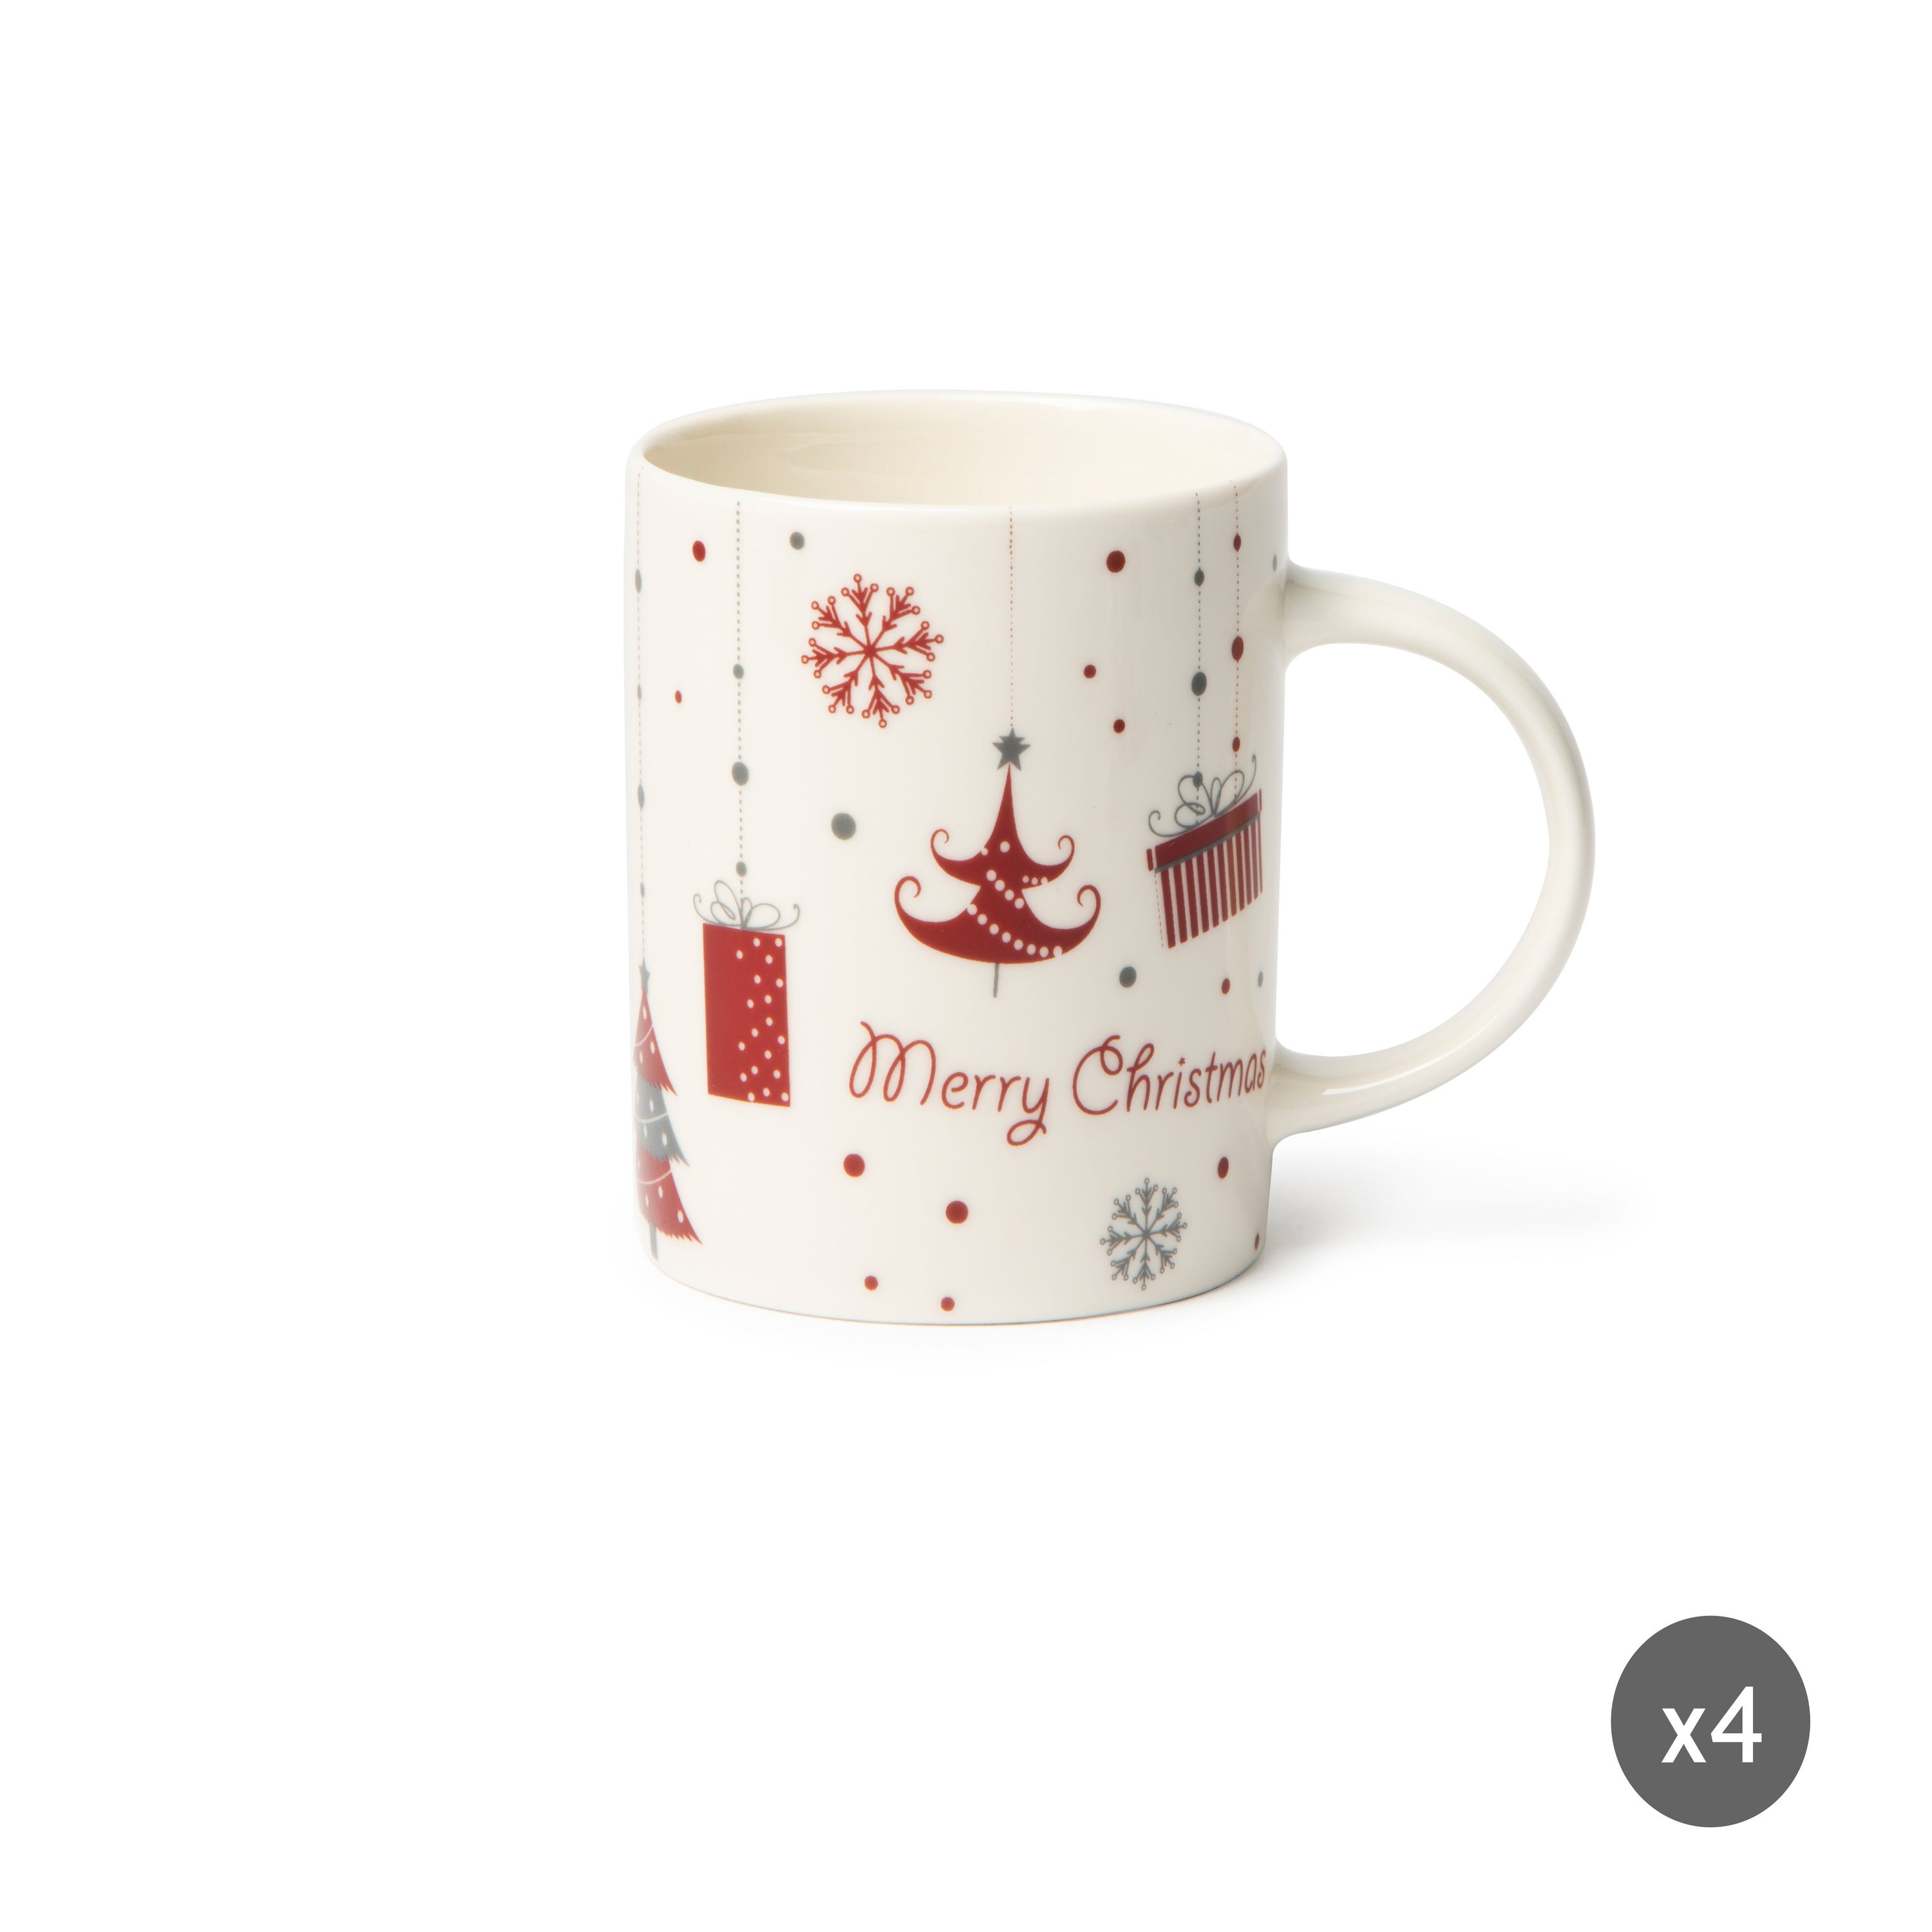 Excelsa set 4 mug Merry Christmas ceramica 30 cl multicolore